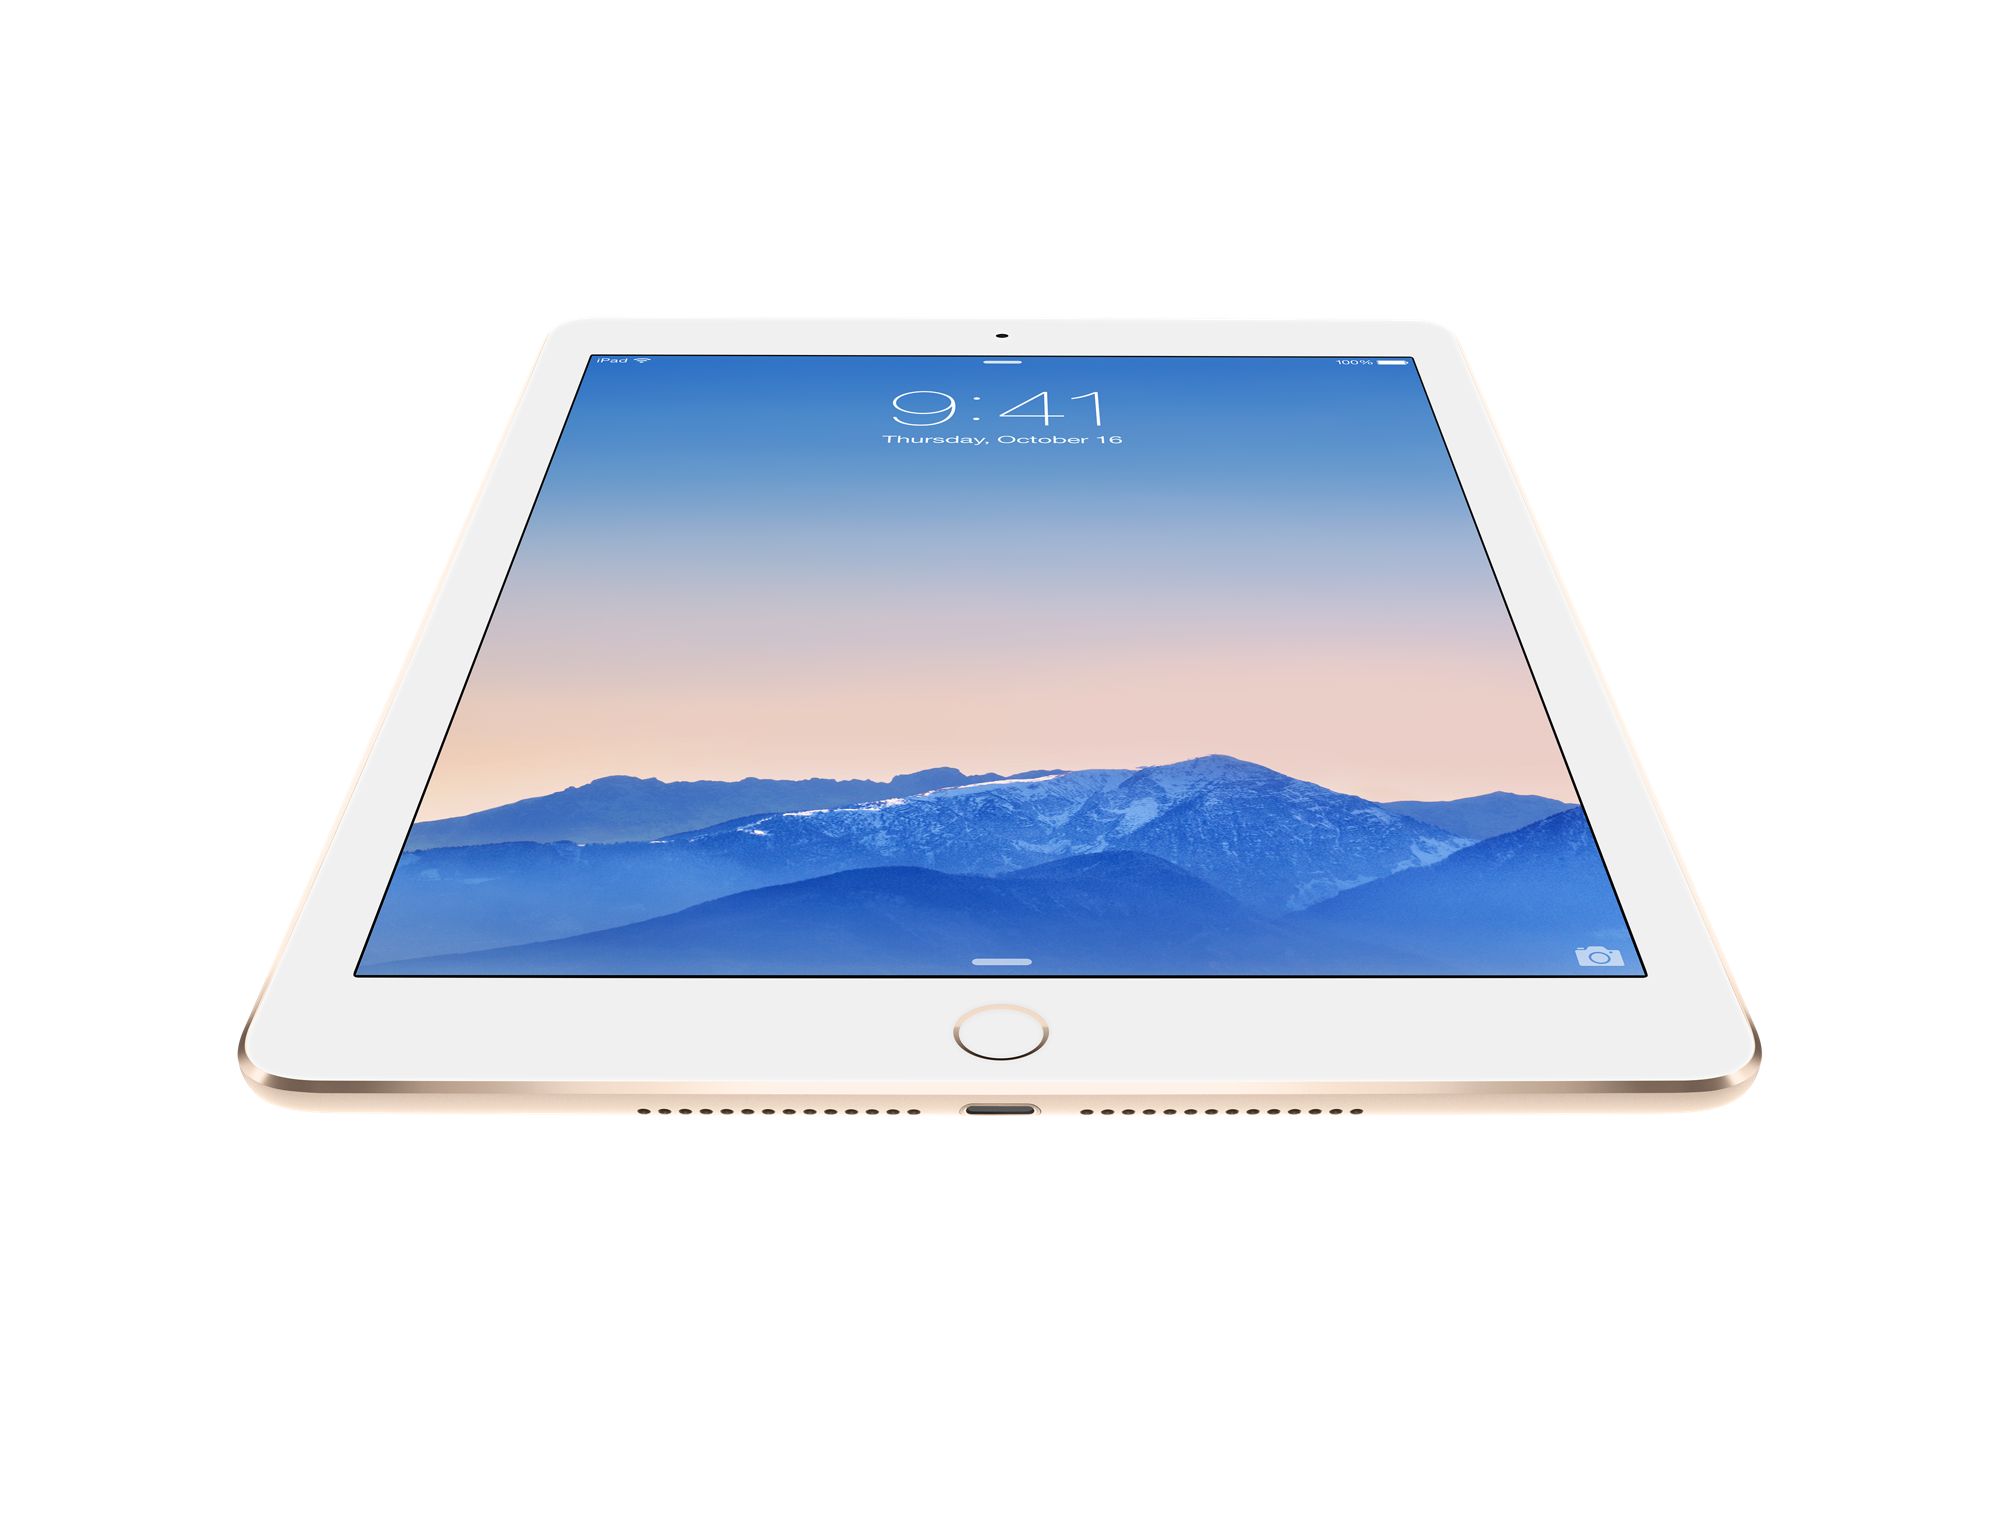 Immagine pubblicata in relazione al seguente contenuto: Sharp produrr i display degli iPad Pro da 12.9-inch di Apple | Nome immagine: news22970_Apple-ipad-air-2_1.jpg